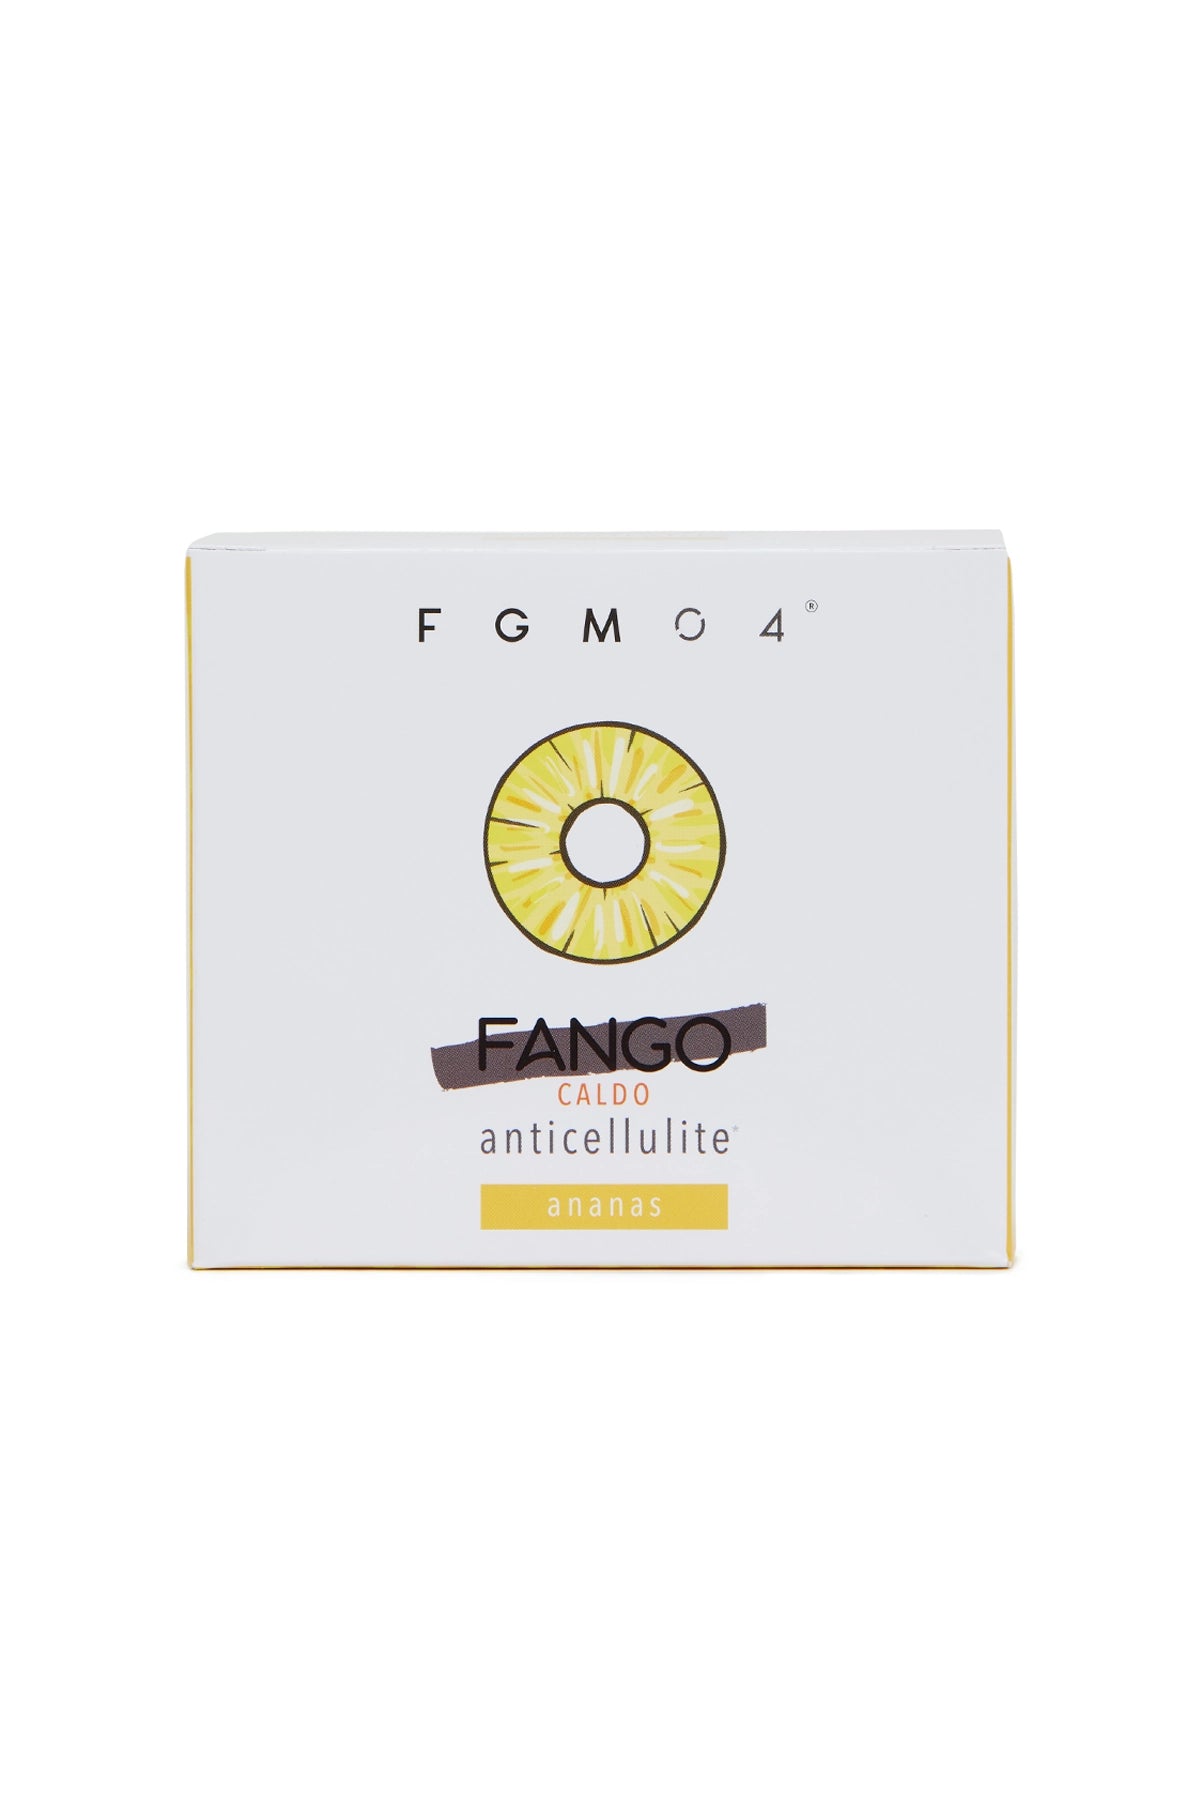 FGM04 Cosmetica Professionale - Fango Caldo Anticellulite Mirtillo - Azione  Anticellulite - Azione Drenante - snellisce e rimodella - Dona Luminosità